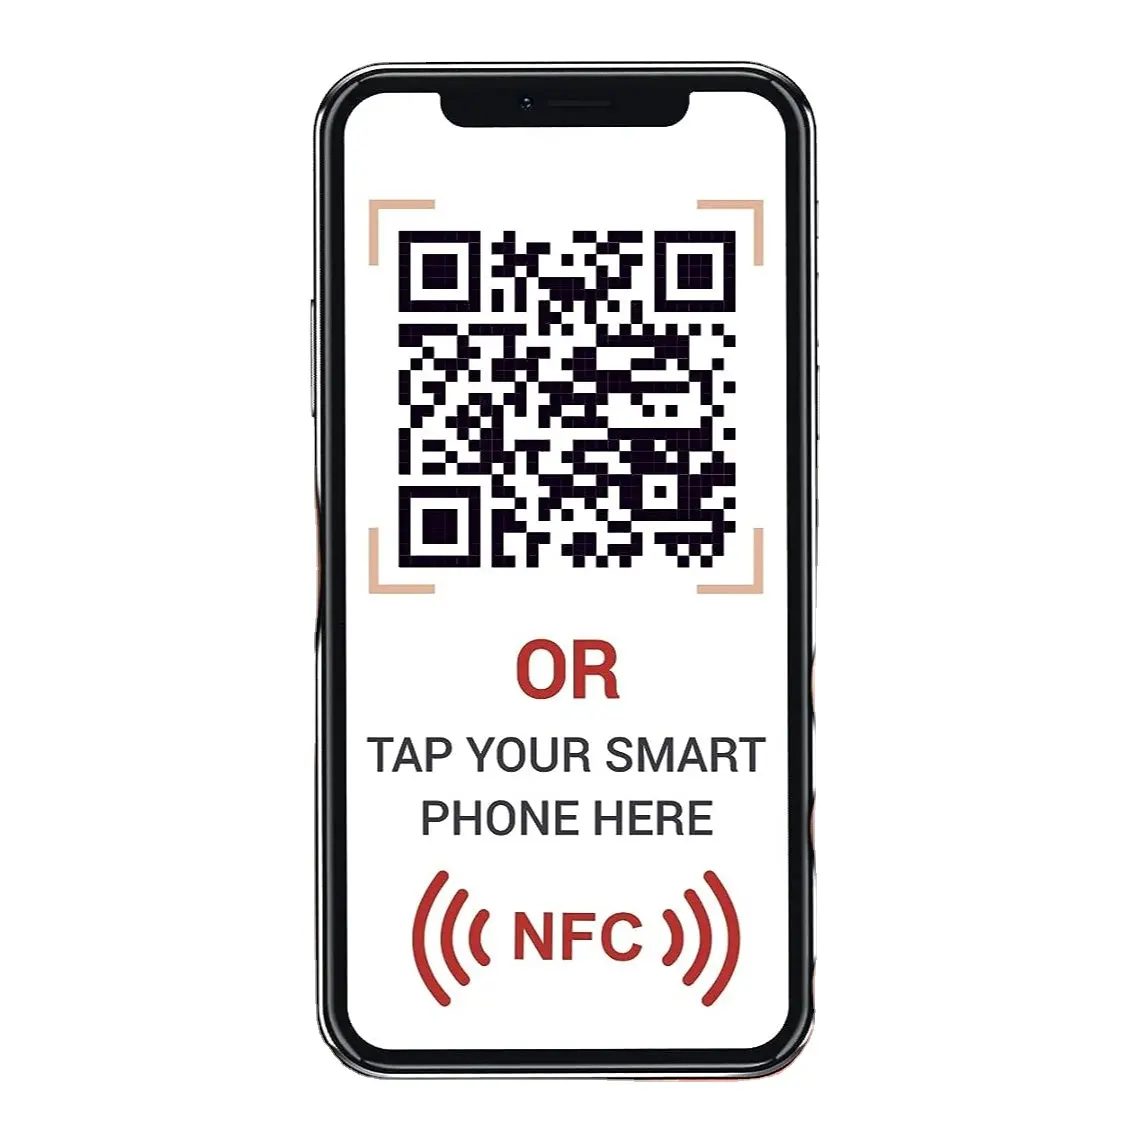 Visite nuestro sitio web pegatinas código QR y pegatinas de etiquetas NFC para promocionar su negocio